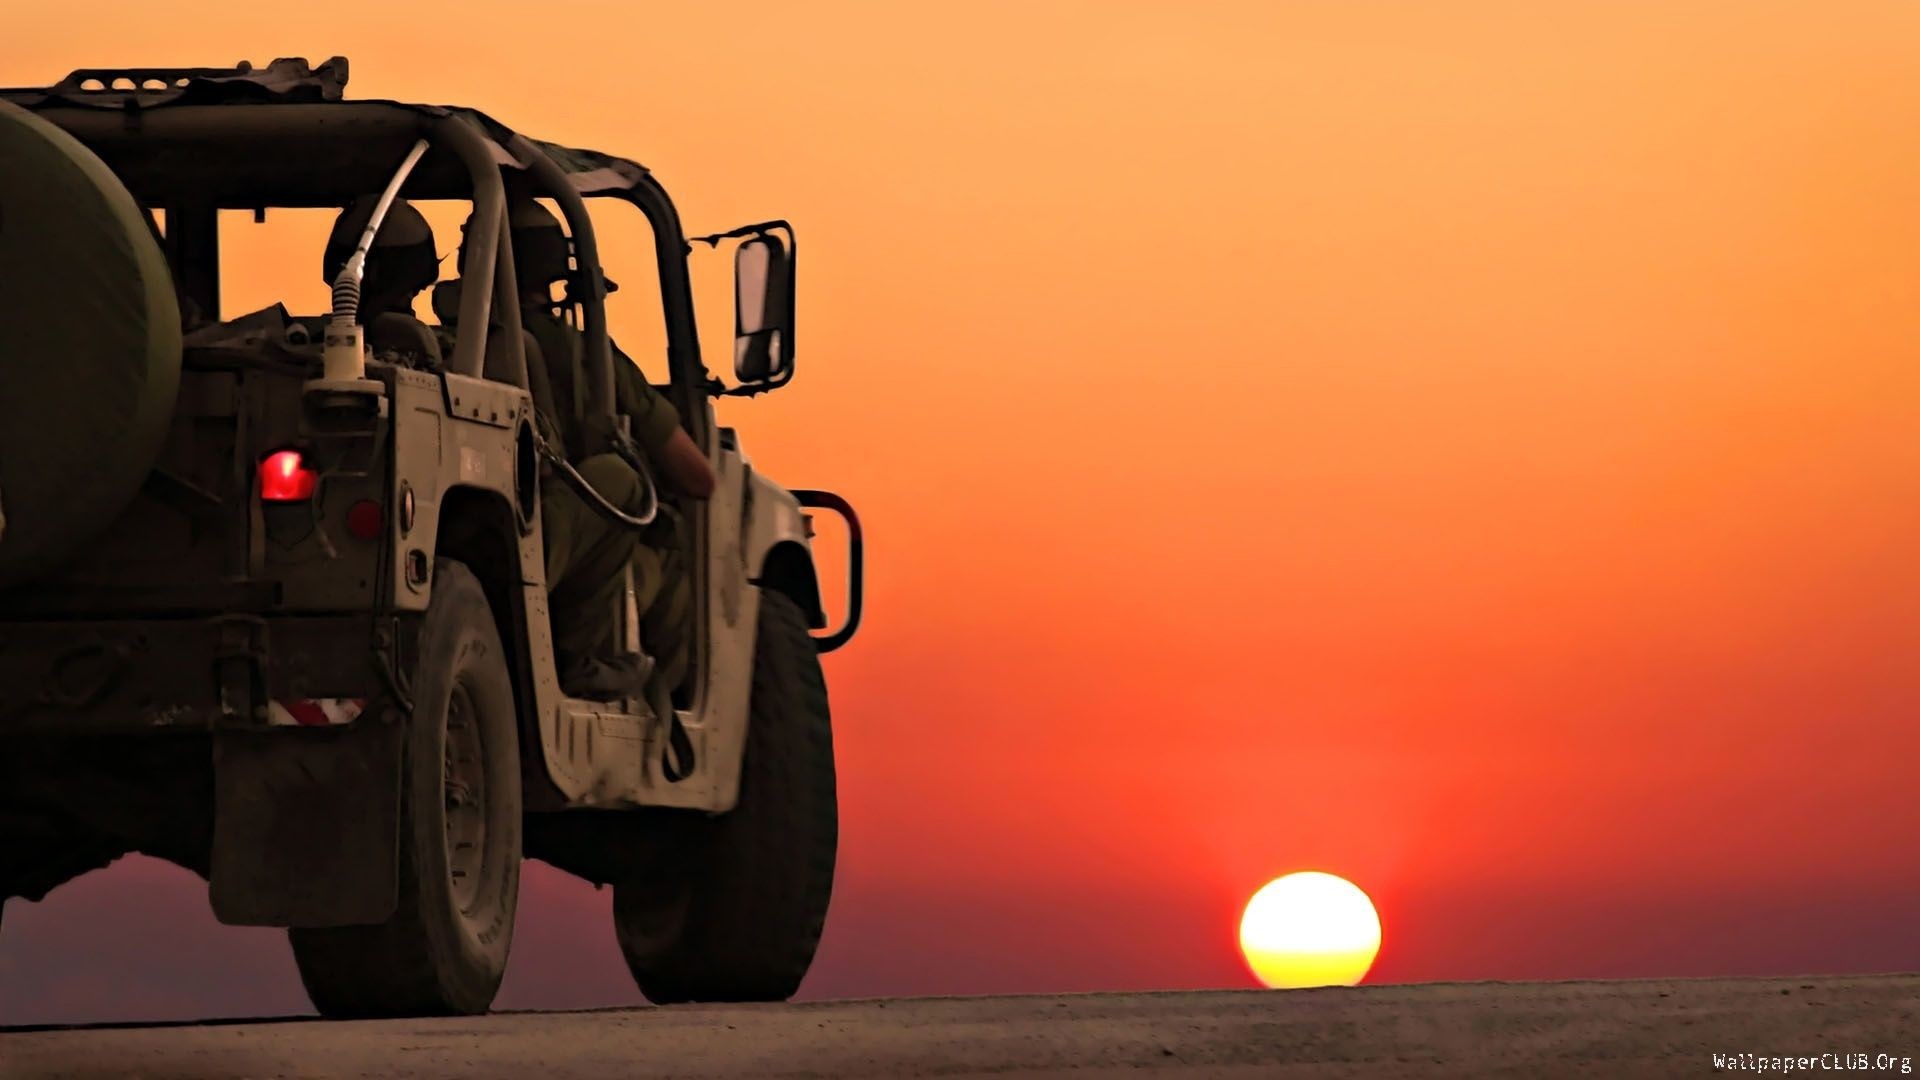 jeep hd wallpaper 1080p,fahrzeug,geländewagen,offroading,auto,landschaft